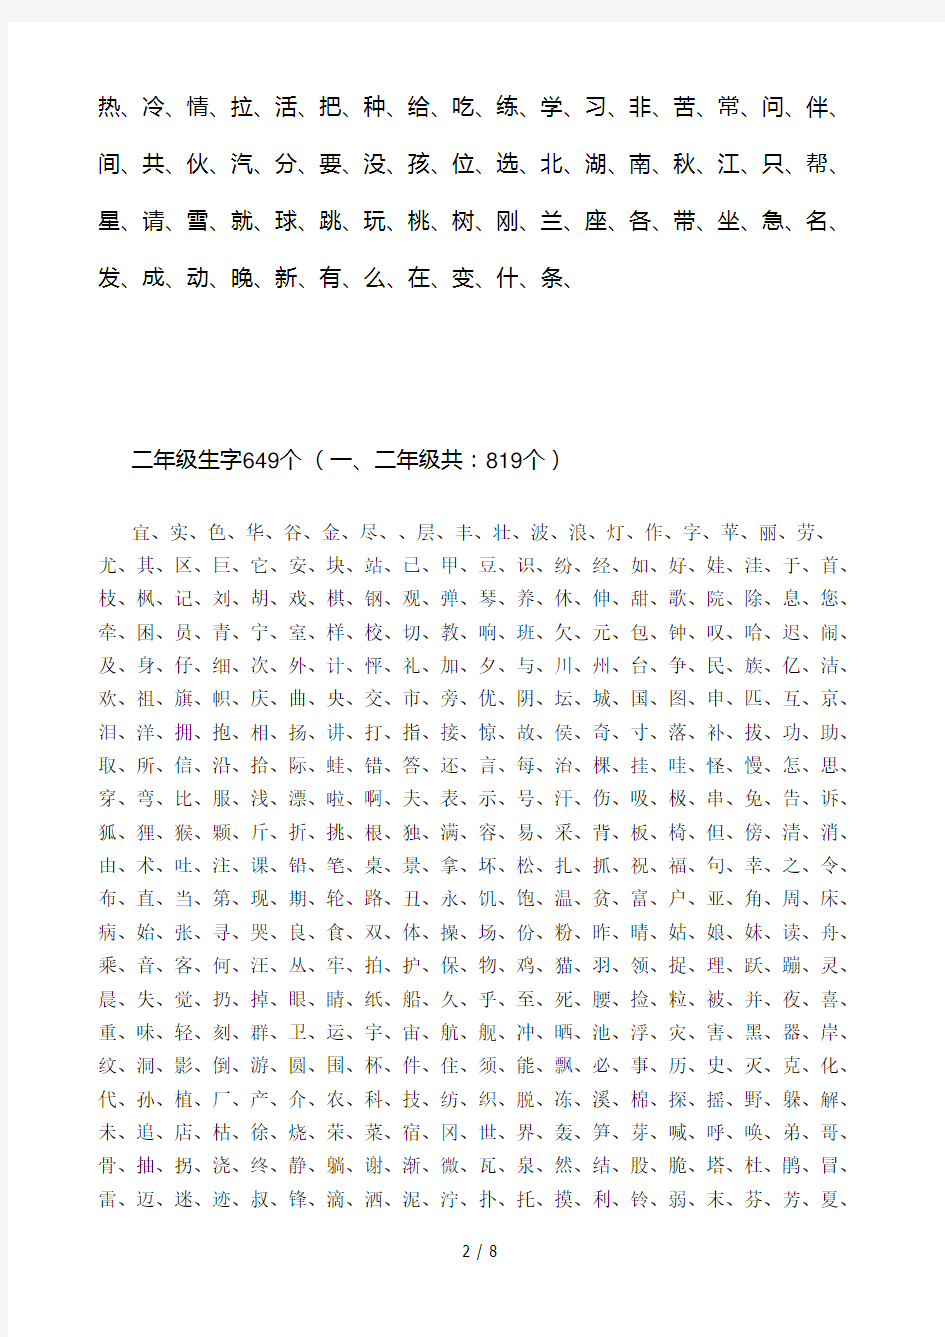 苏教版小学语文生字表-(1-6年级)